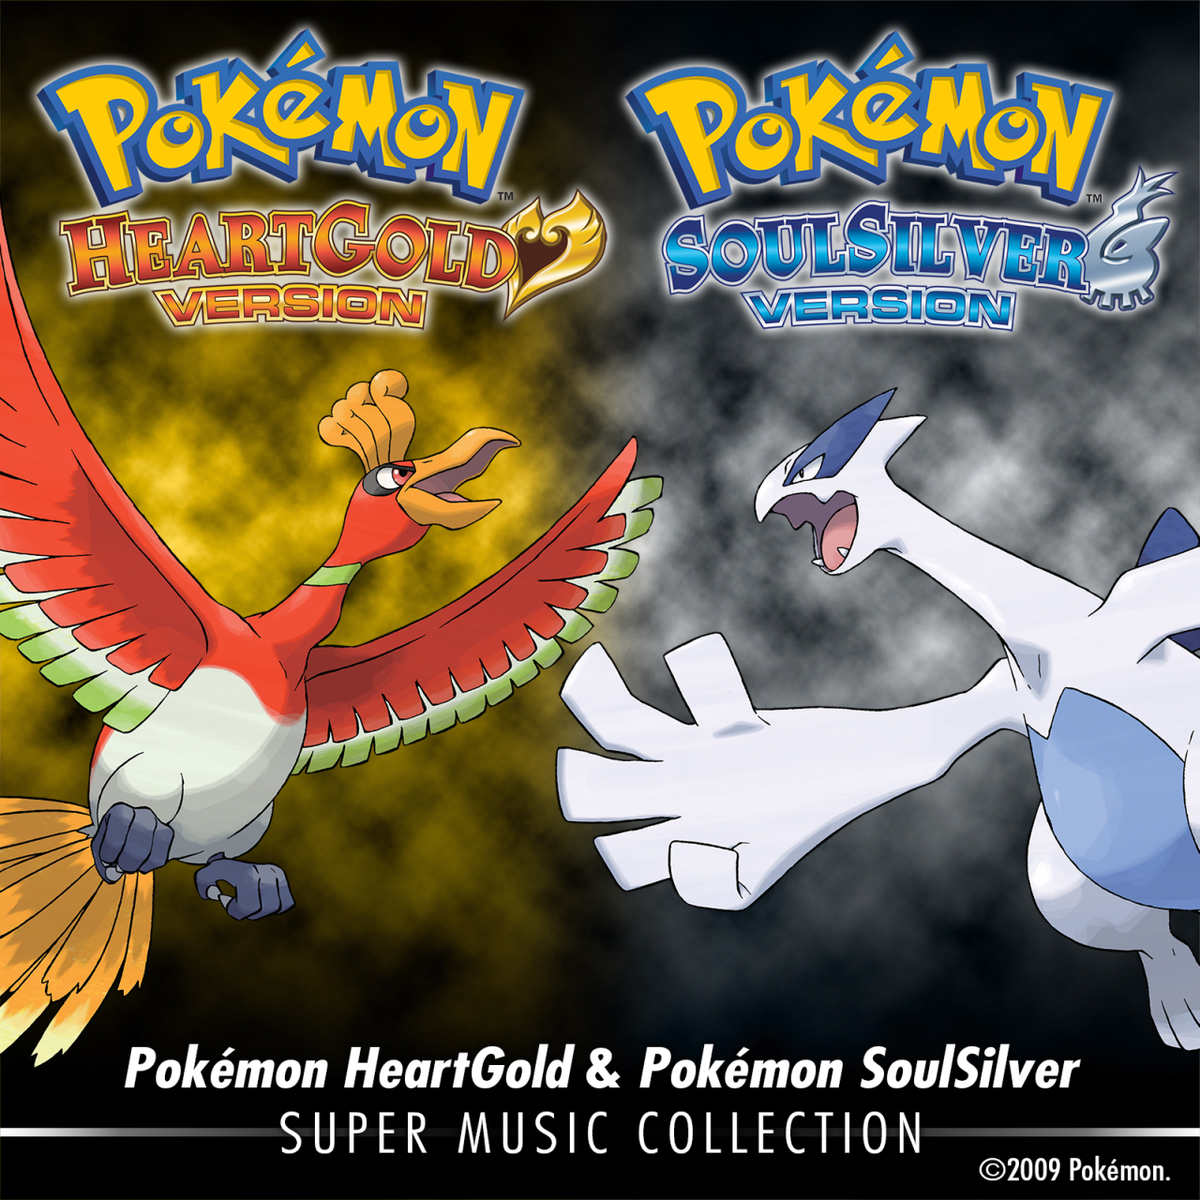 Pokémon HeartGold & Pokémon SoulSilver: Super Music Collection 